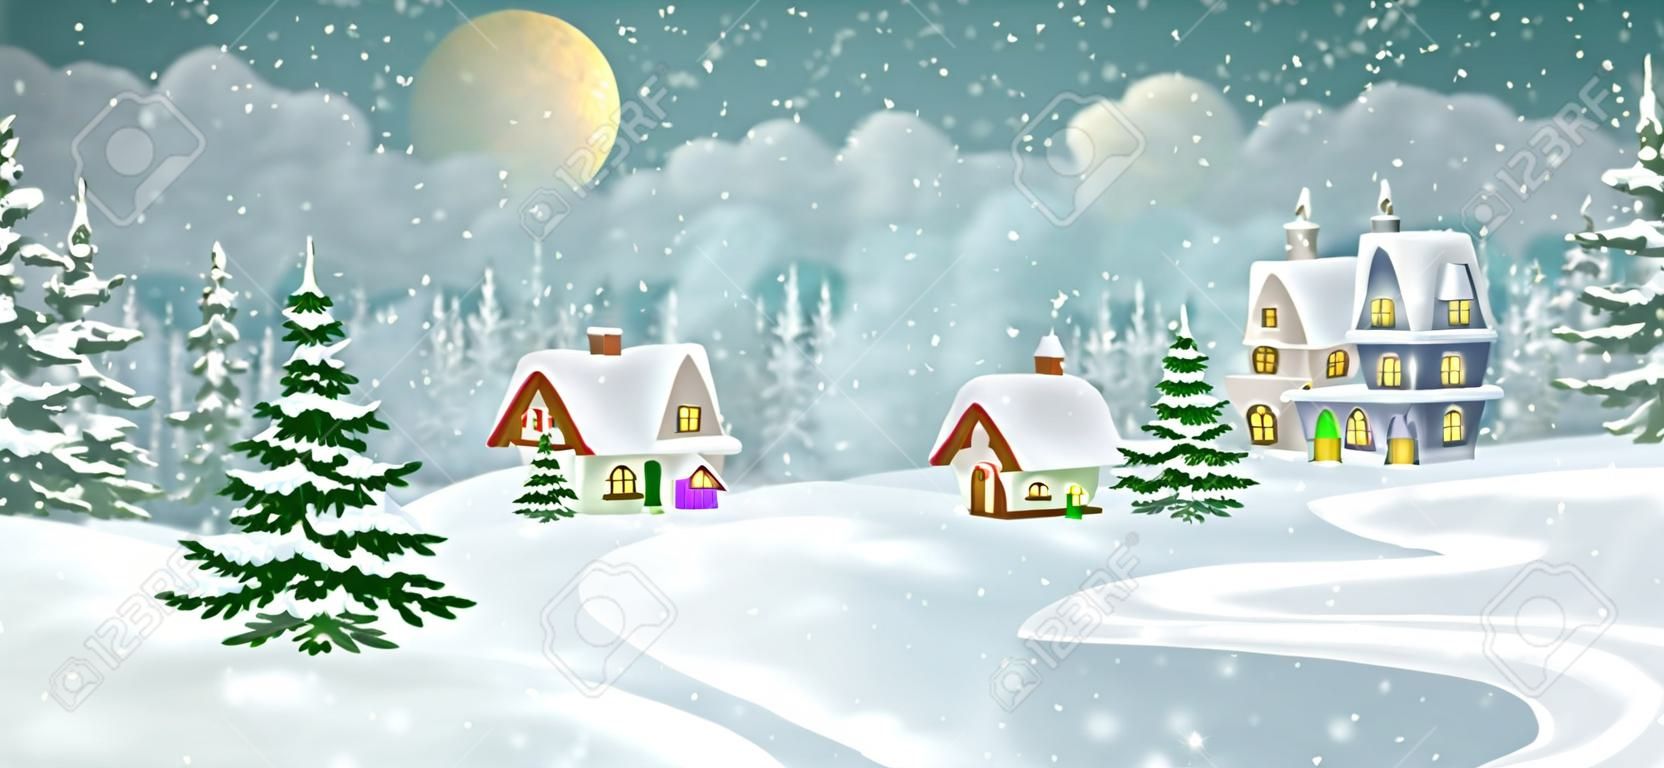 Зимний деревенский пейзаж с сосновым лесом. Маленькие сказочные домики, засыпанные снегом.